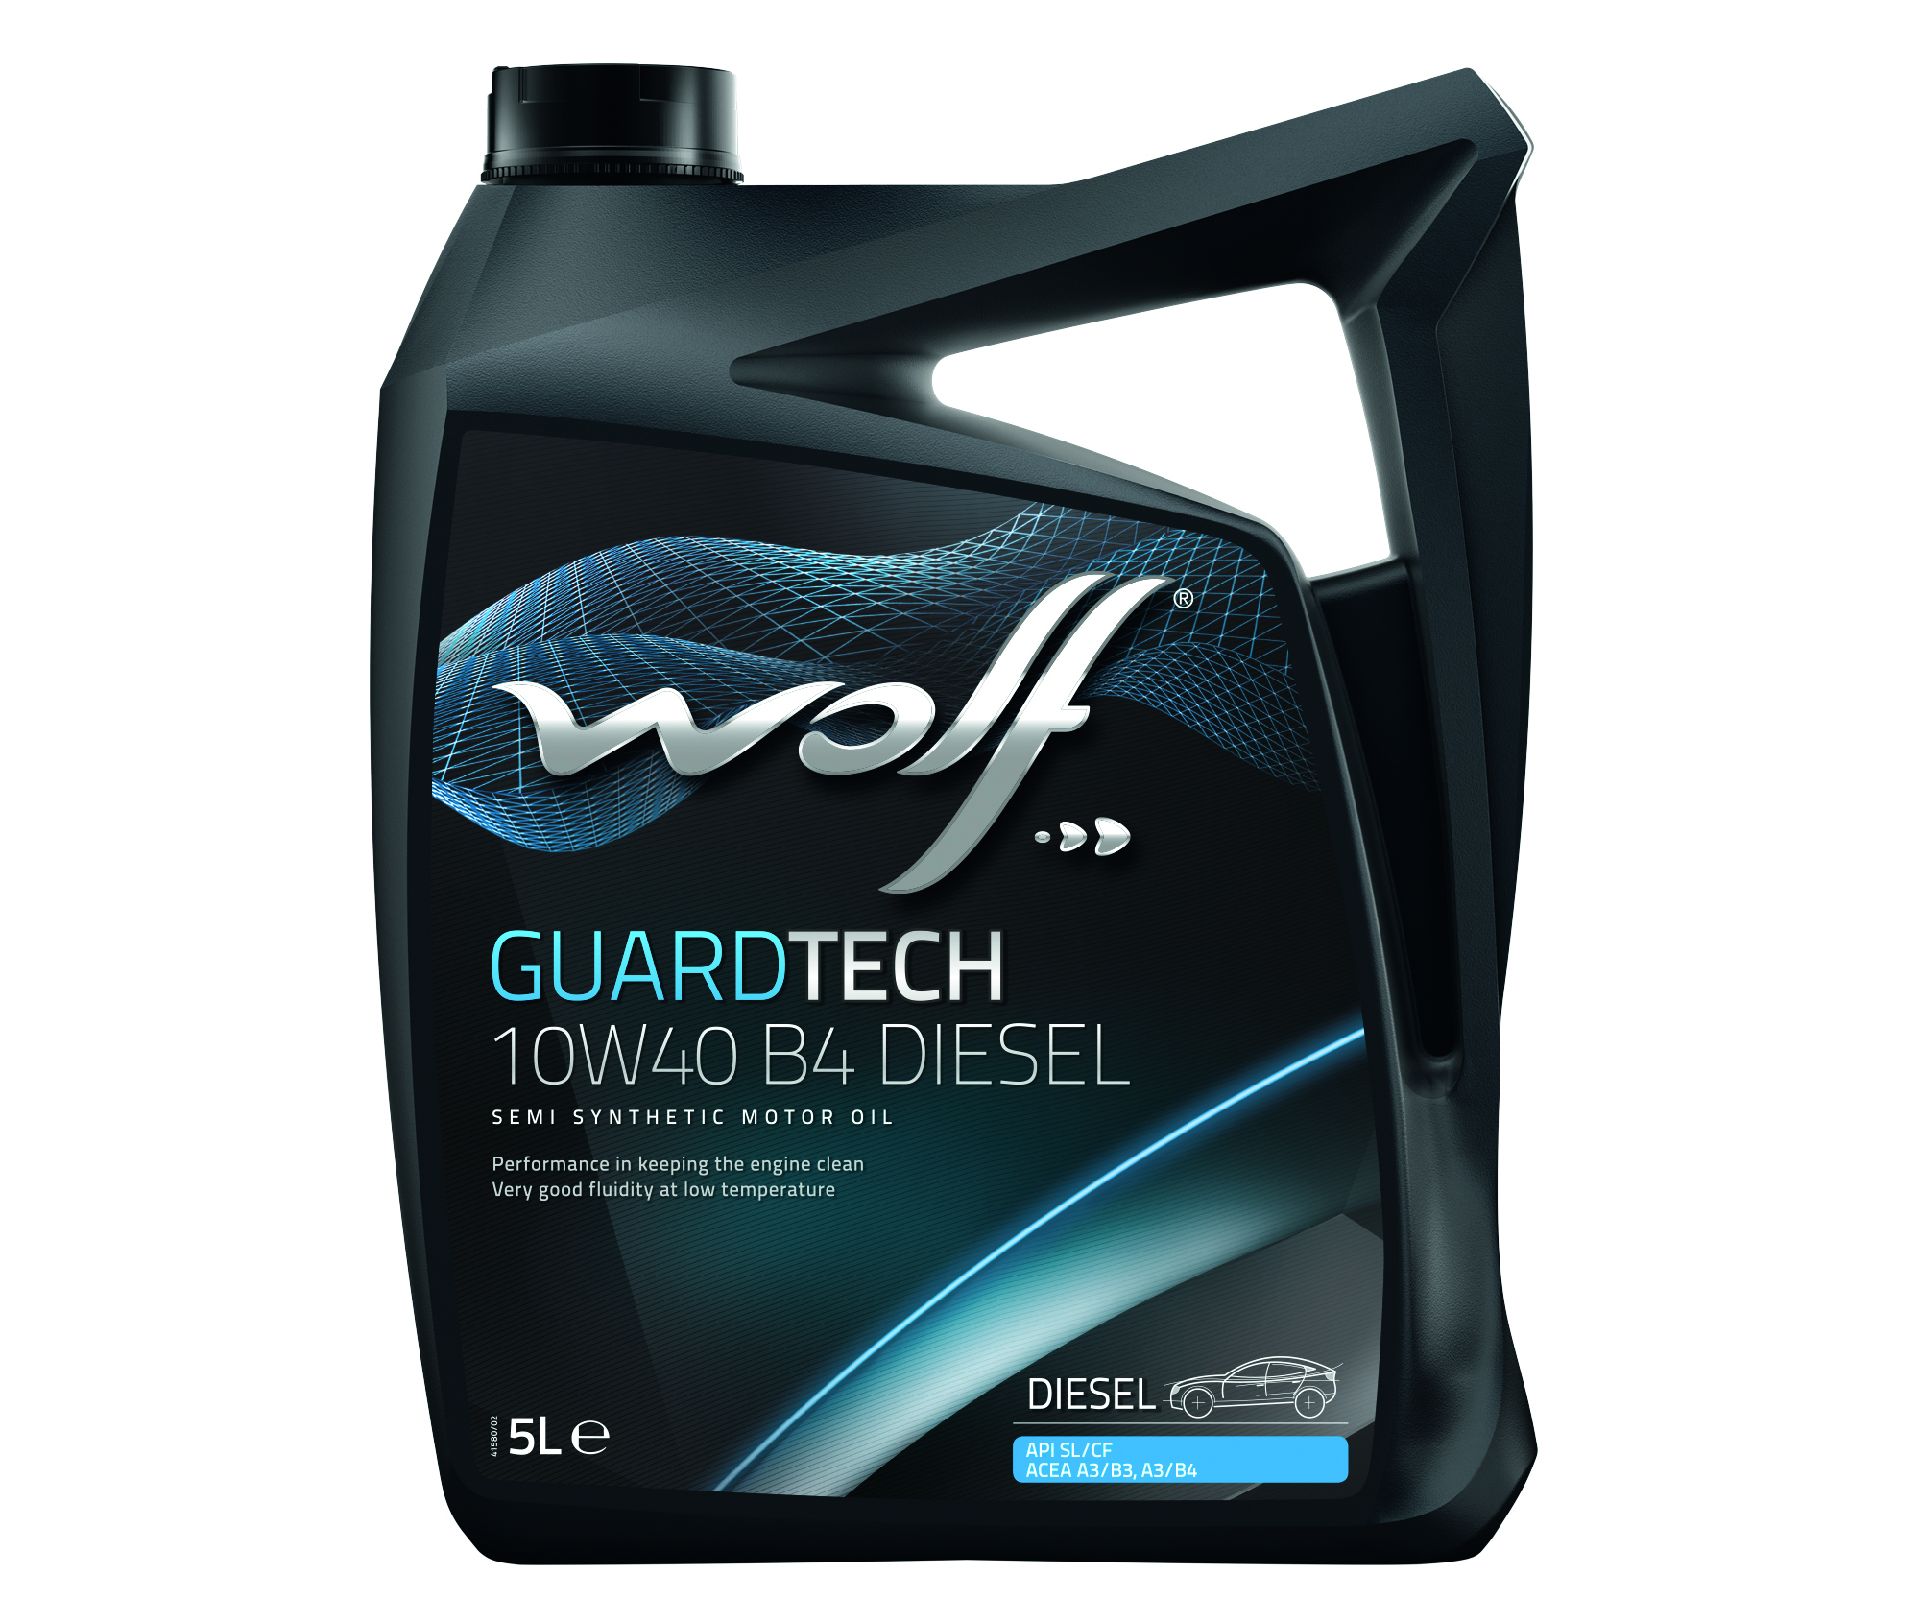 Wolf guard tech 10w40 b4 diesel